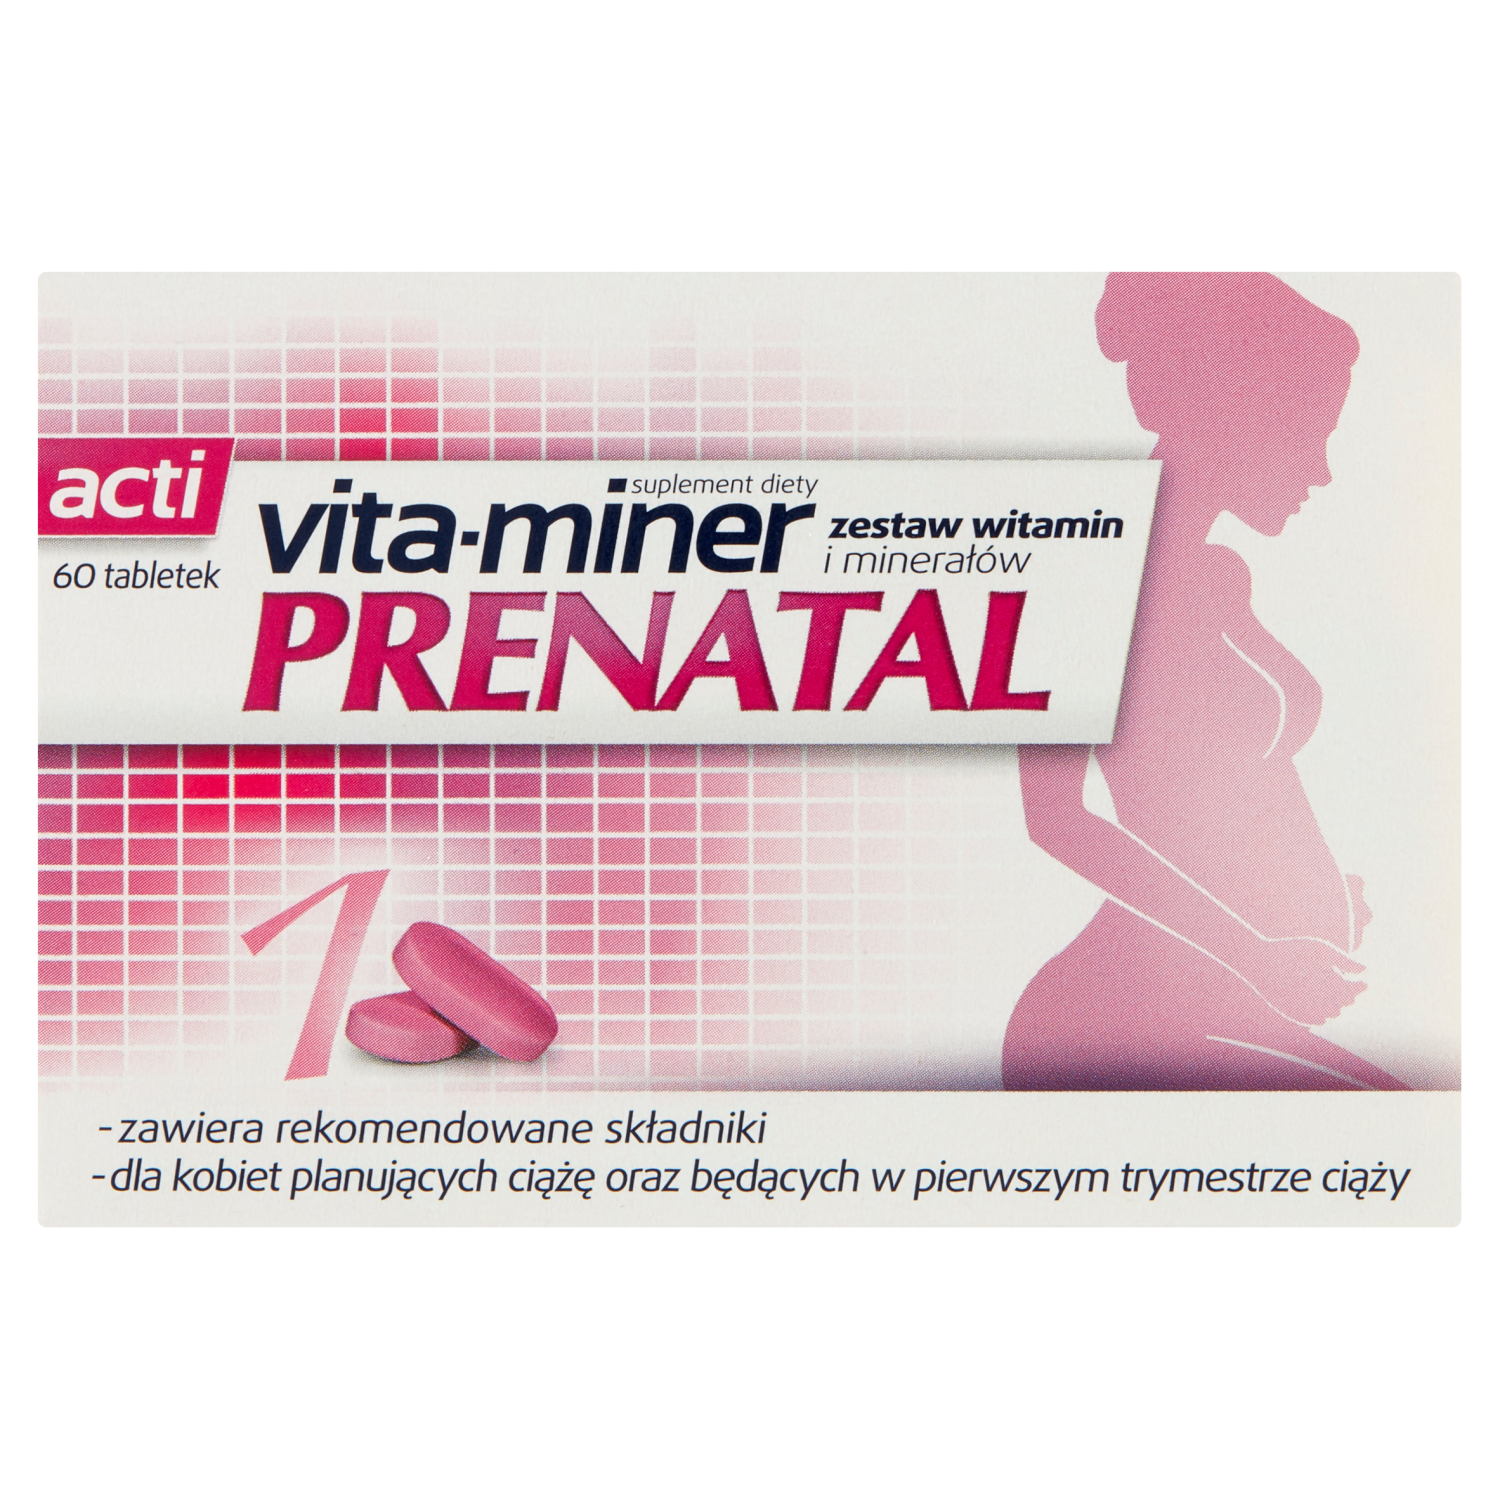 linea detox биологически активная добавка 60 таблеток 1 упаковка Vita-Miner Prenatal биологически активная добавка, 60 таблеток/1 упаковка